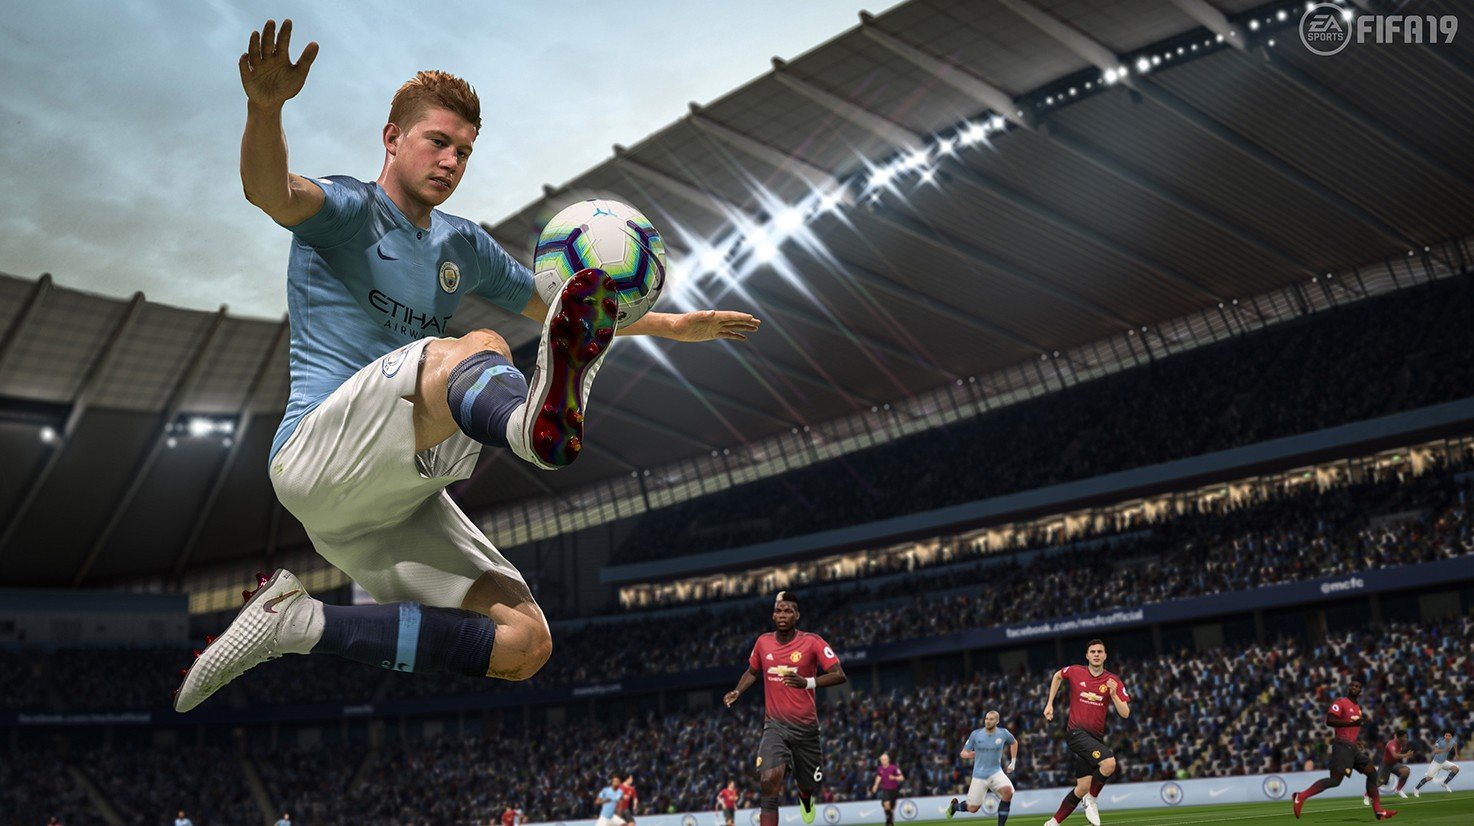 FIFA 19: entenda as mudanças do game de futebol